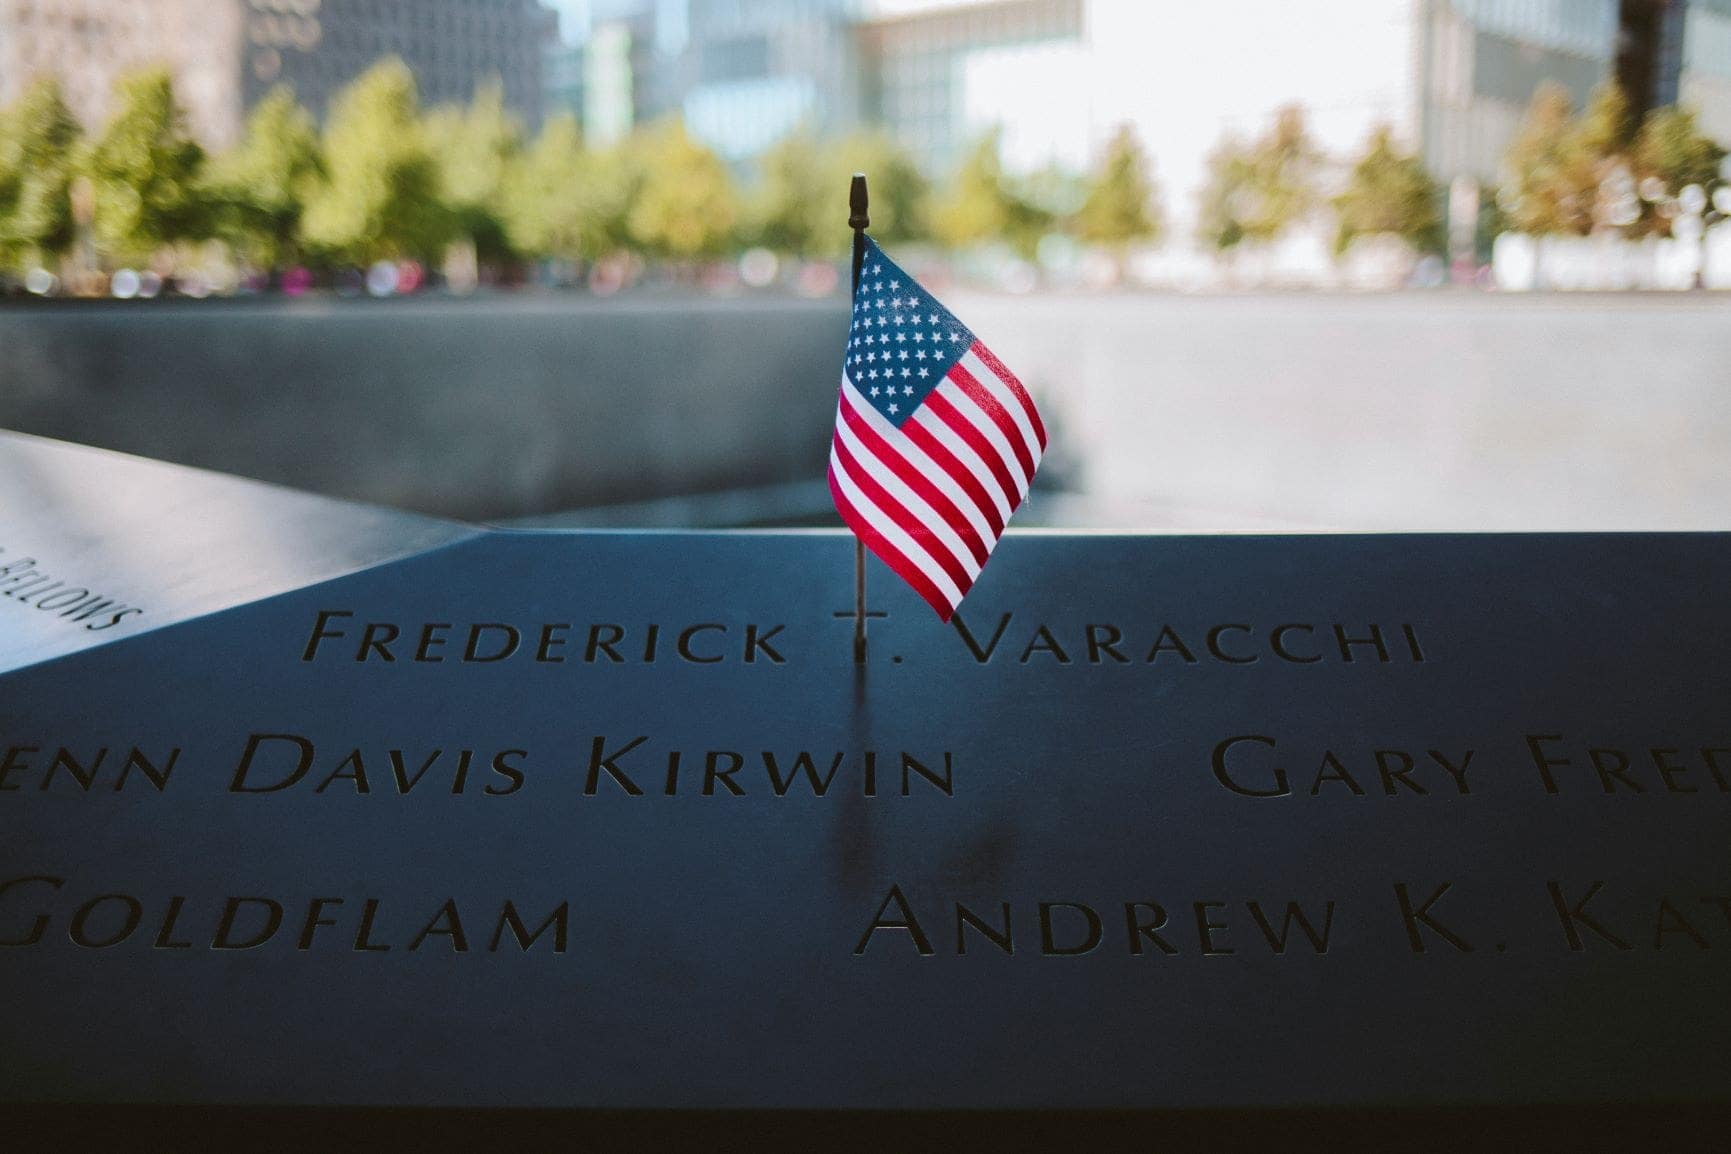 911 Memorial New York